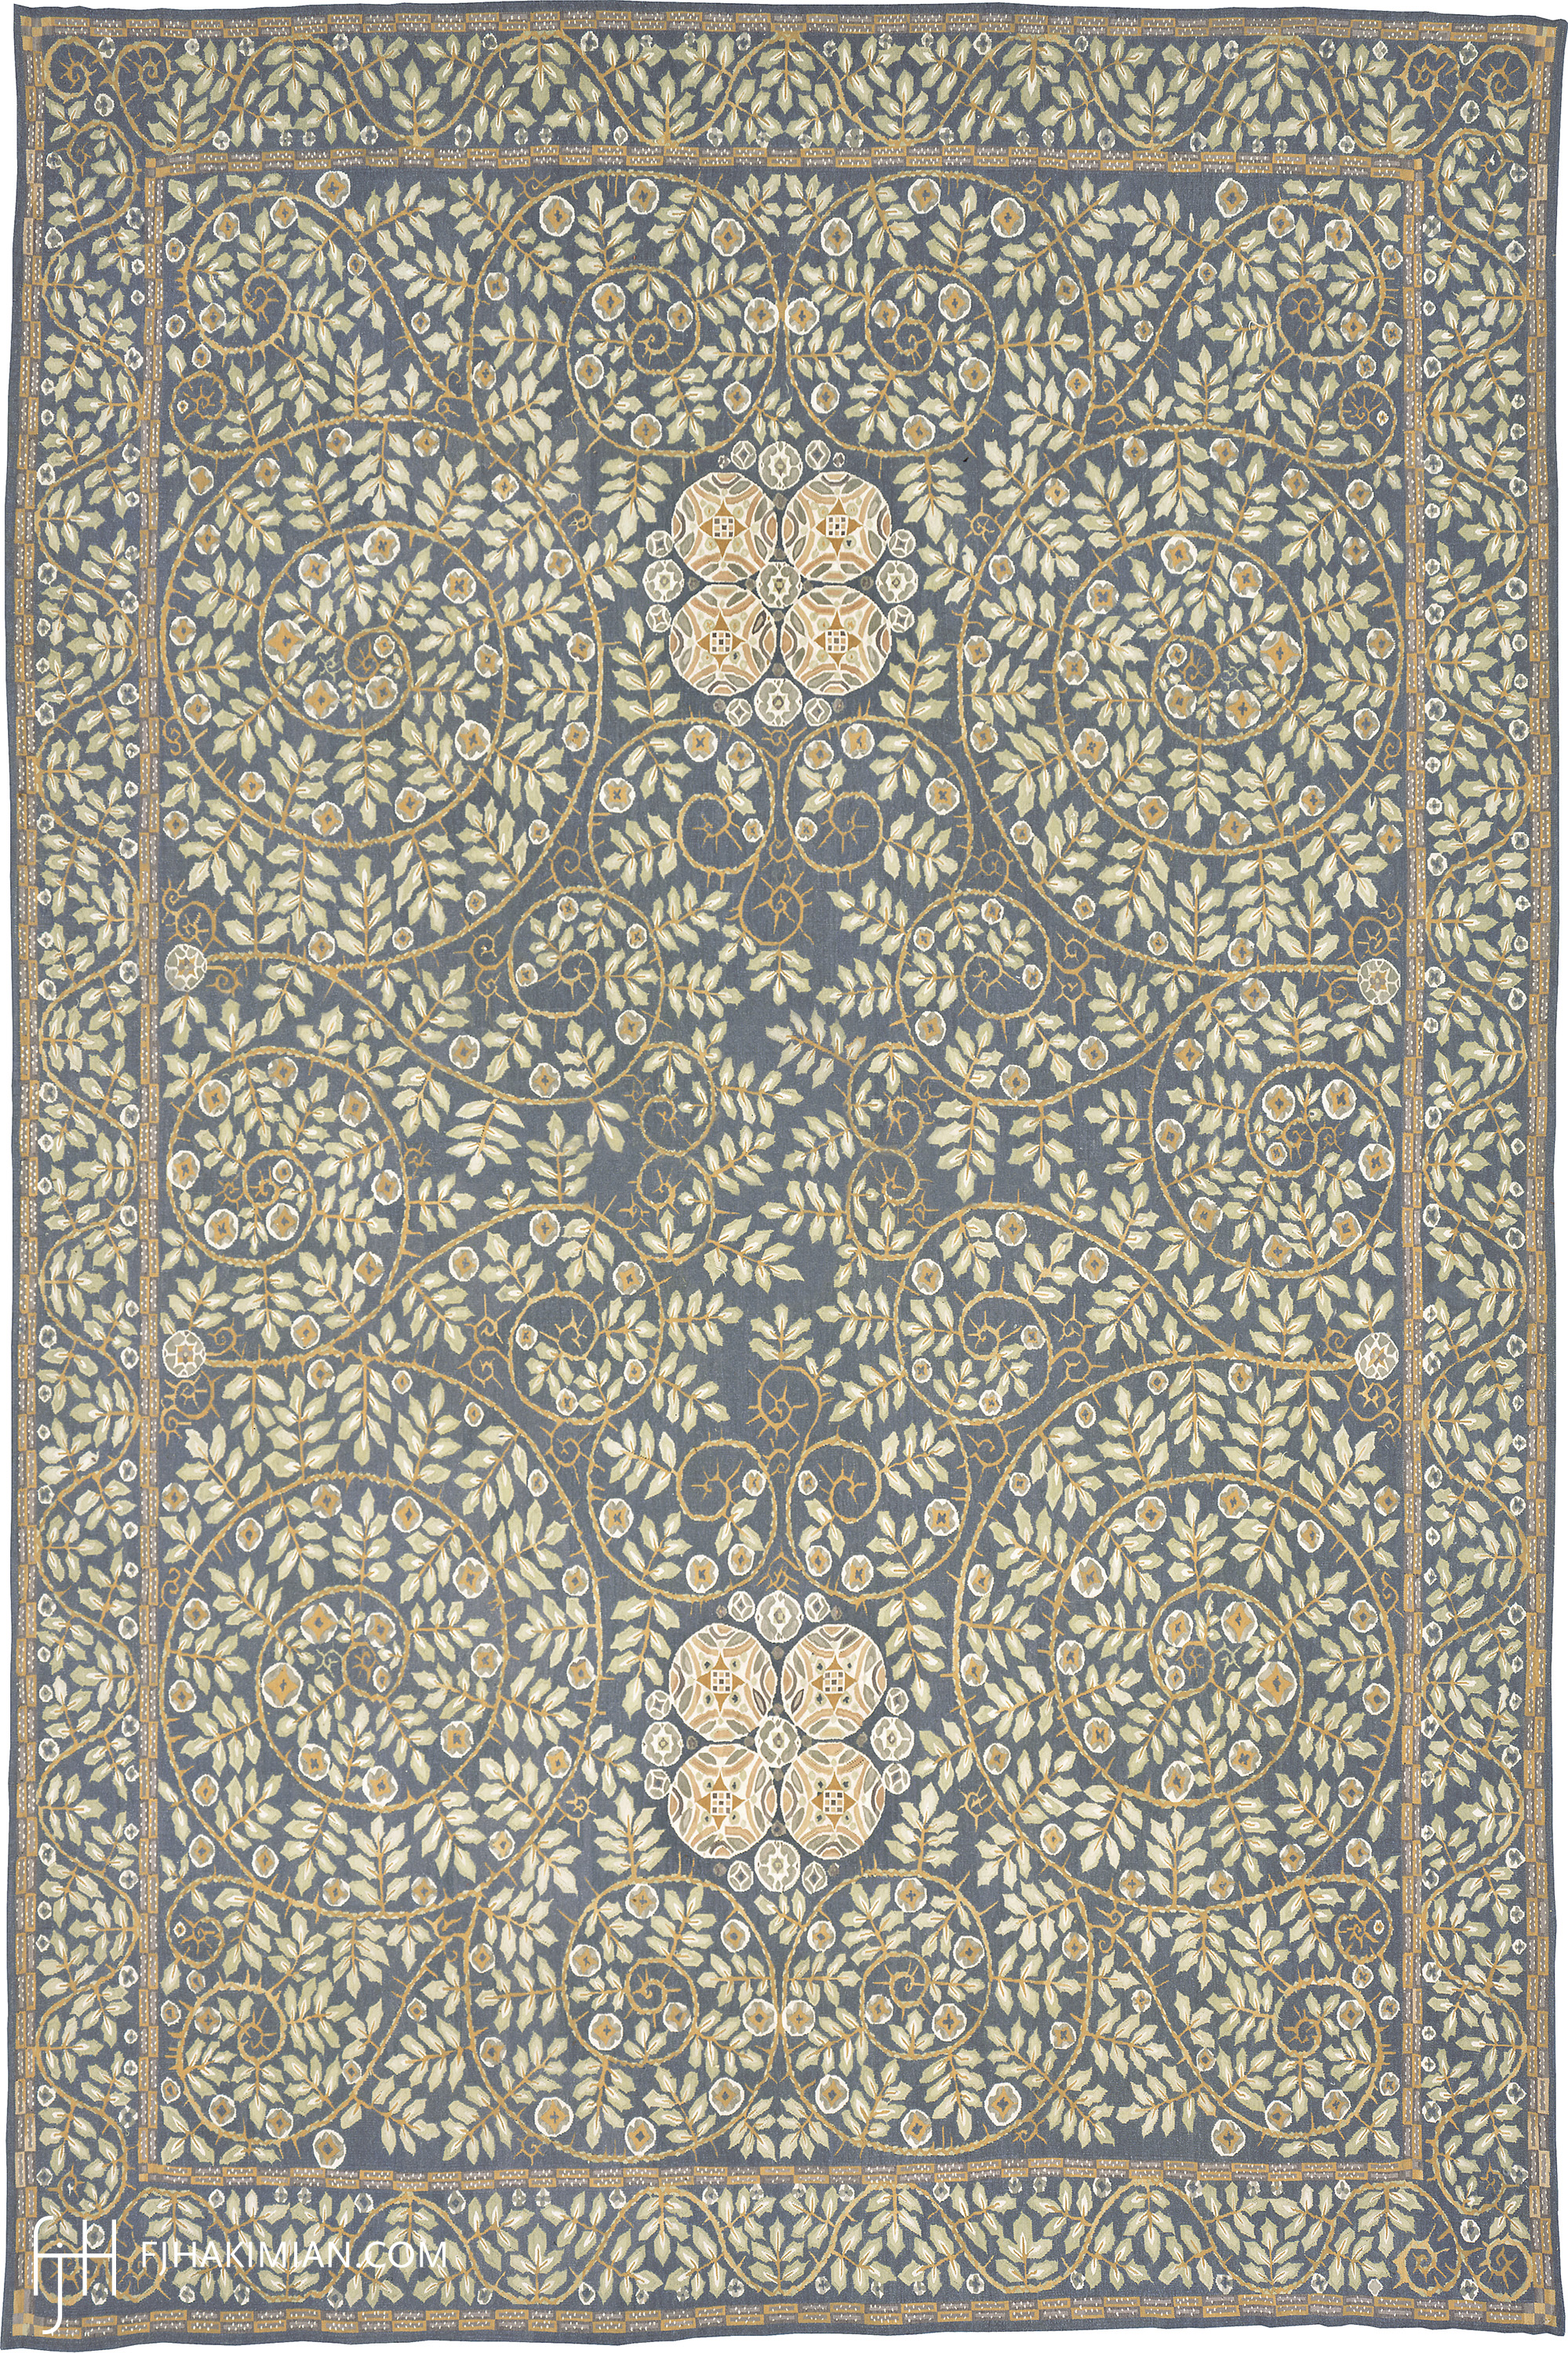 WIENER WERKSTATTE II Design | Custom Modern Carpets | FJ Hakimian | Carpet Gallery in NY